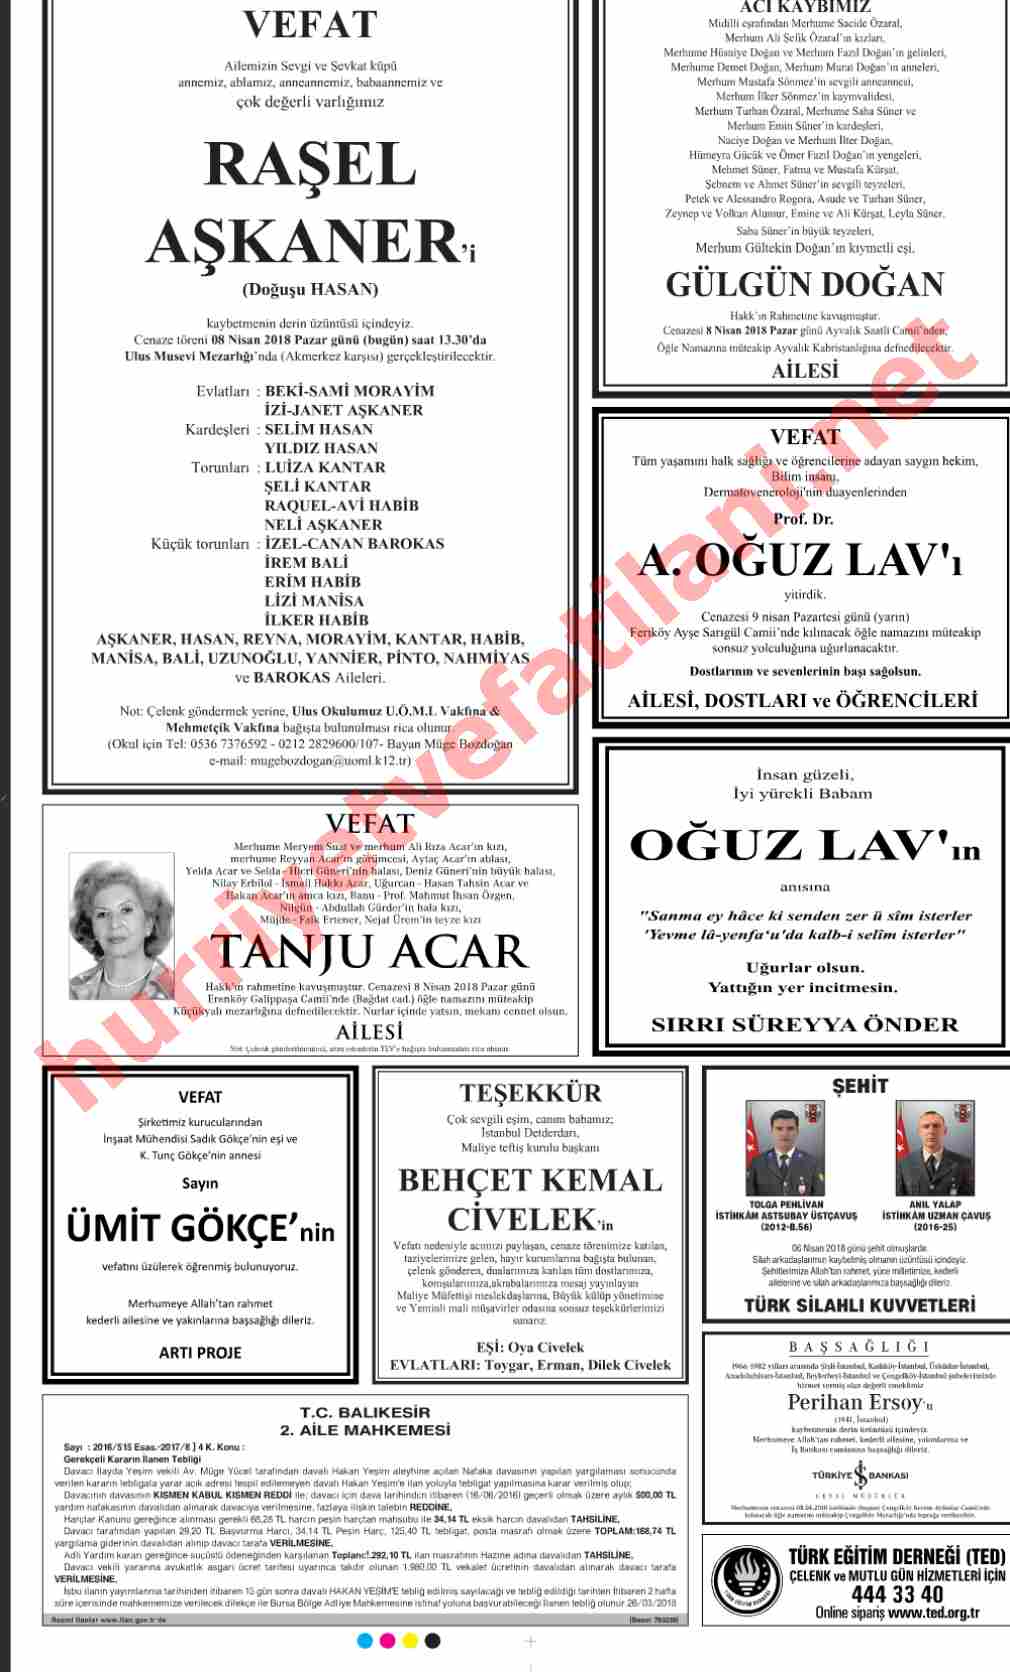 08 Nisan 2018 Hürriyet Gazetesinde Yayınlanmış Vefat İlanları Sayfası